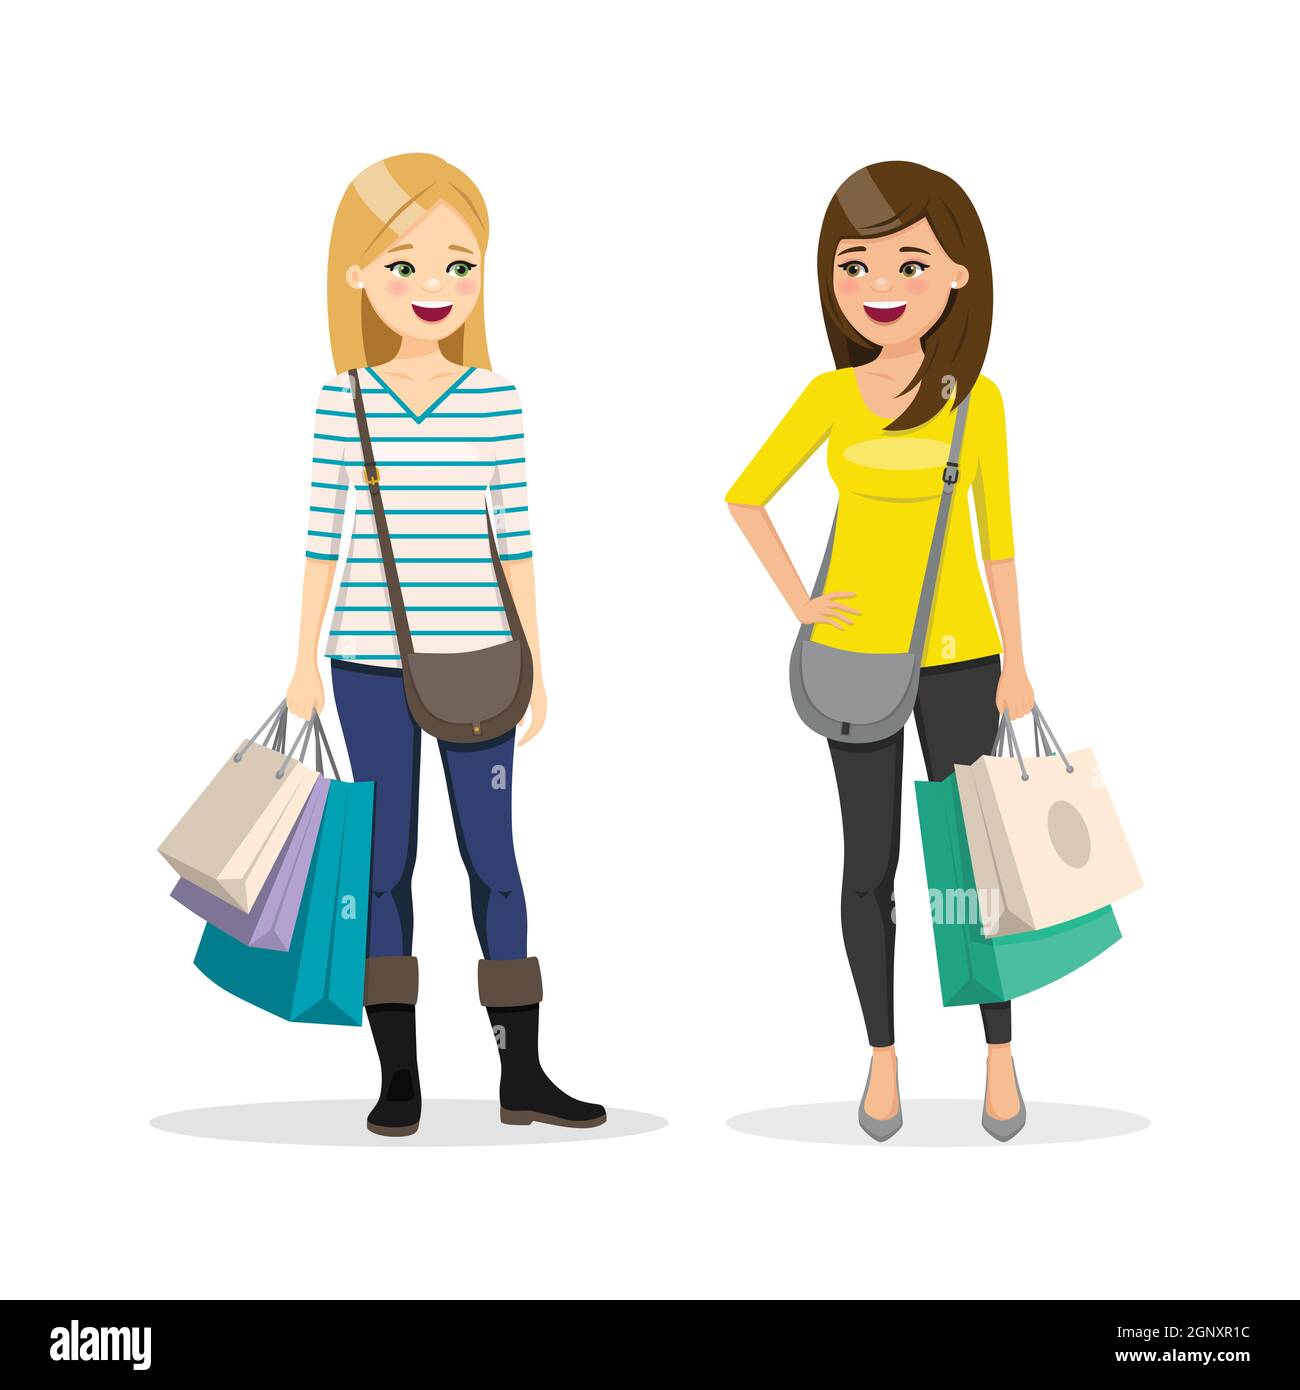 Amis magasinent ensemble. Deux femmes. Illustration de vecteur de personnes isolées Illustration de Vecteur